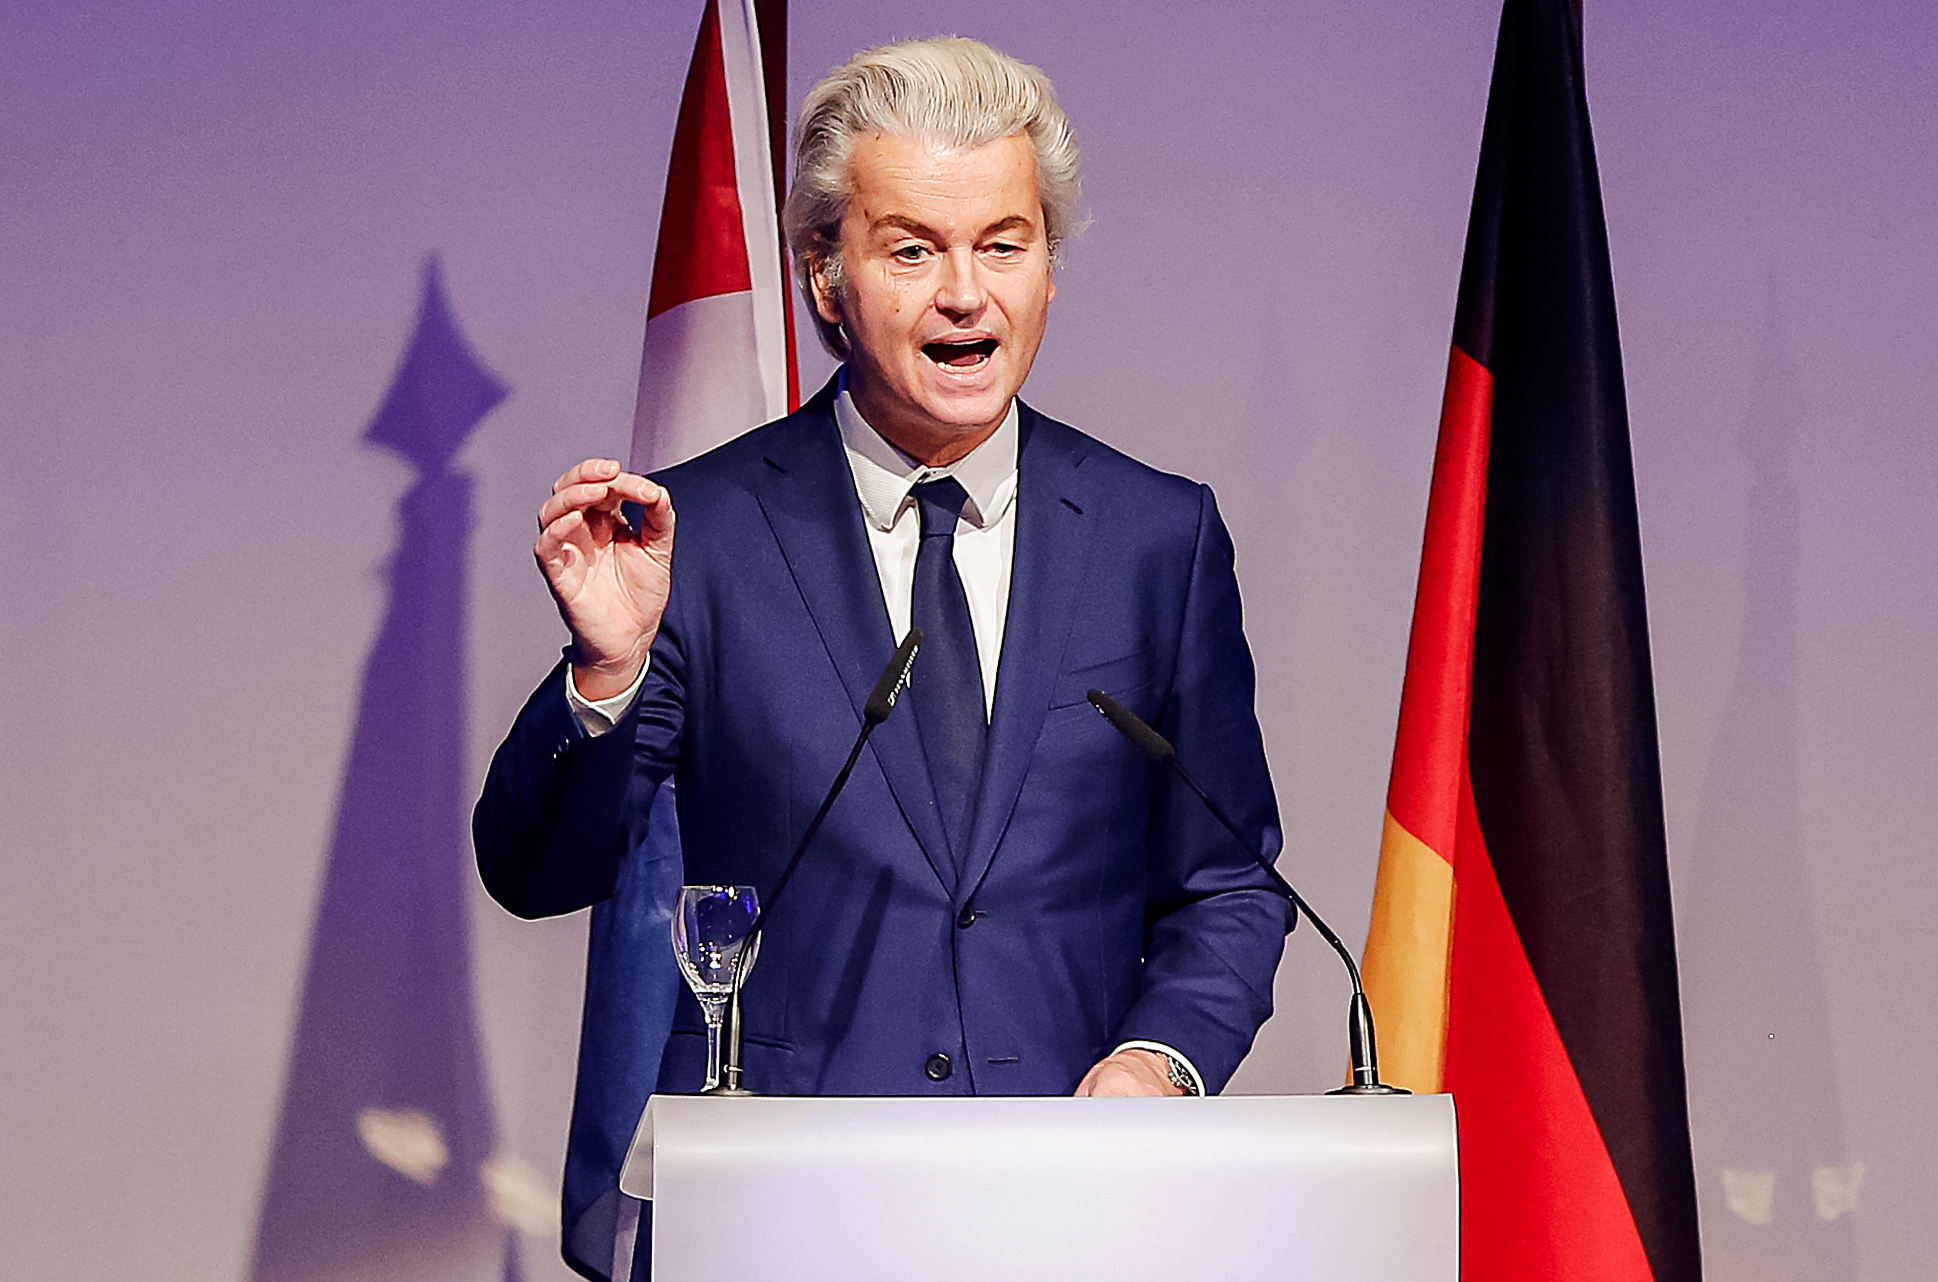 Chính trị gia người Hà Lan Geert Wilders có bài diễn văn tại một cuộc họp của những người theo chủ nghĩa dân tộc Âu châu ở Koblenz, Đức, vào ngày 21/01/2017. (Ảnh: Michael Probst/AP Photo, Ảnh tư liệu)